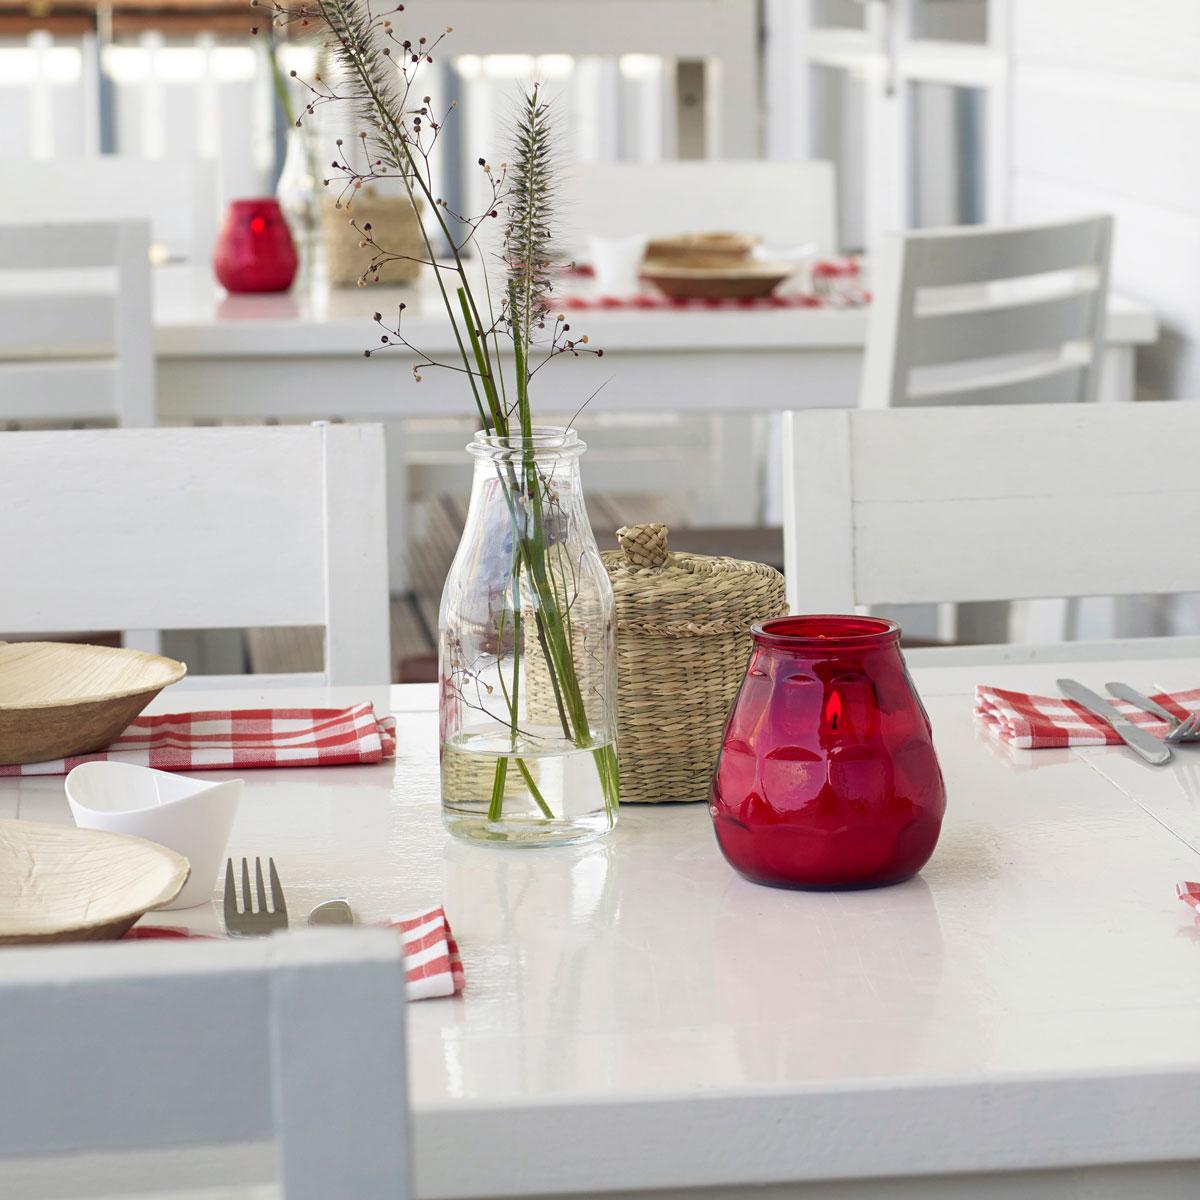 Tischdeko für die Gastronomie im Außenbereich: Weiße Holzmöbel mit sommerlich dekorierten Tischen. Rot-weiß karierte Servietten als Unterlage für kleine Holzschüsseln, geflochtene Körbchen aus Seegras und Glasvasen mit sommerlichen Zweigen. In der Mitte jedes Tisches steht ein rotes, brennendes Glaswindlicht.